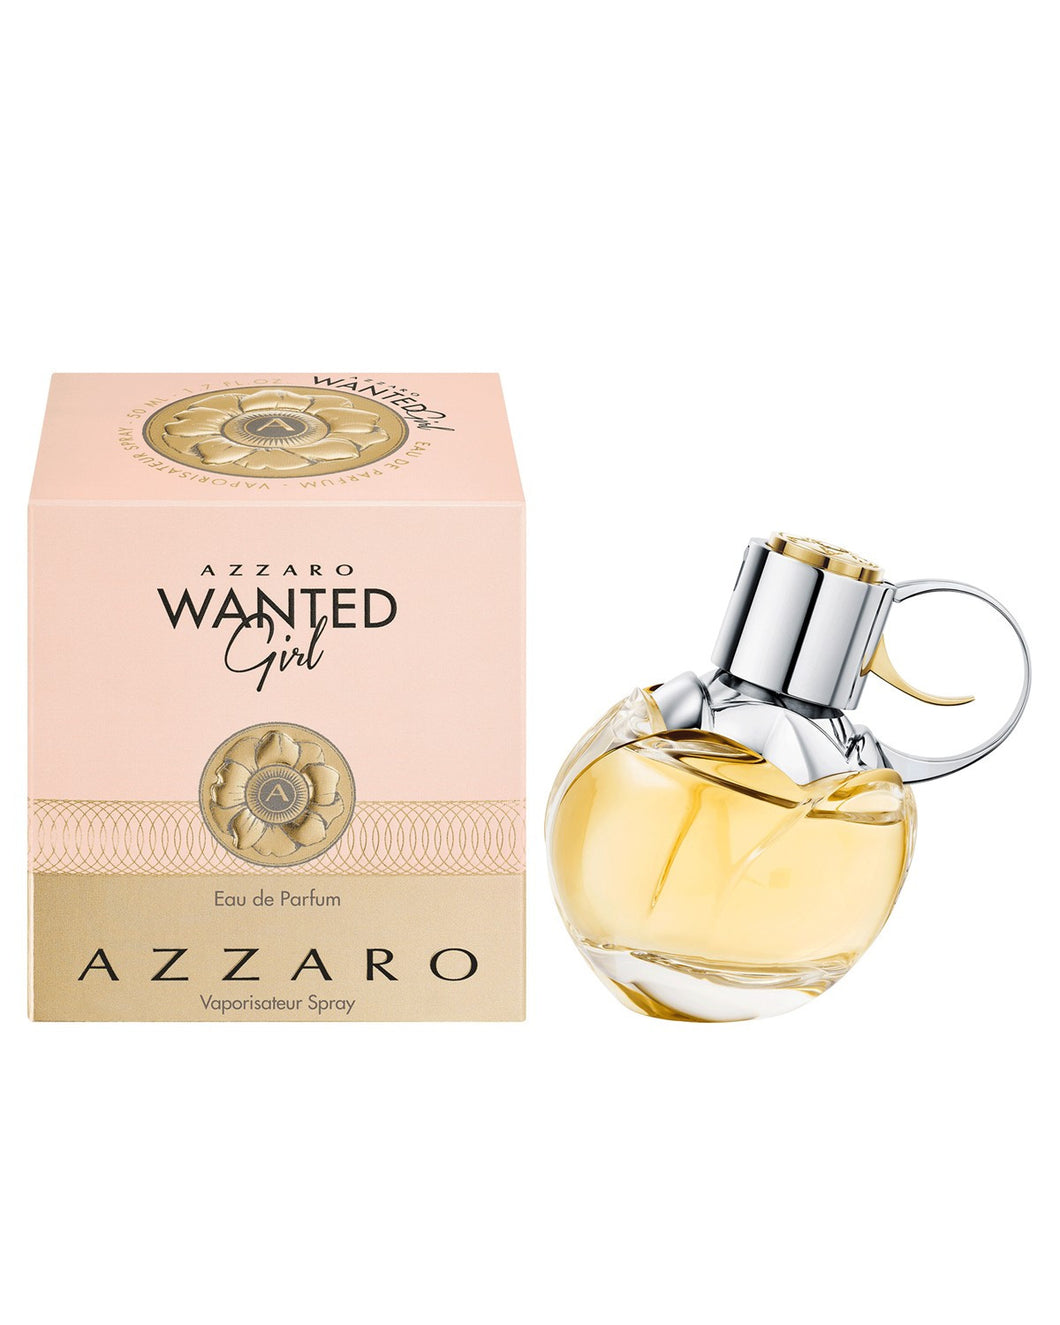 Azzaro Wanted Girl Eau de Parfum 2.7 oz / 80 ml spray For Women